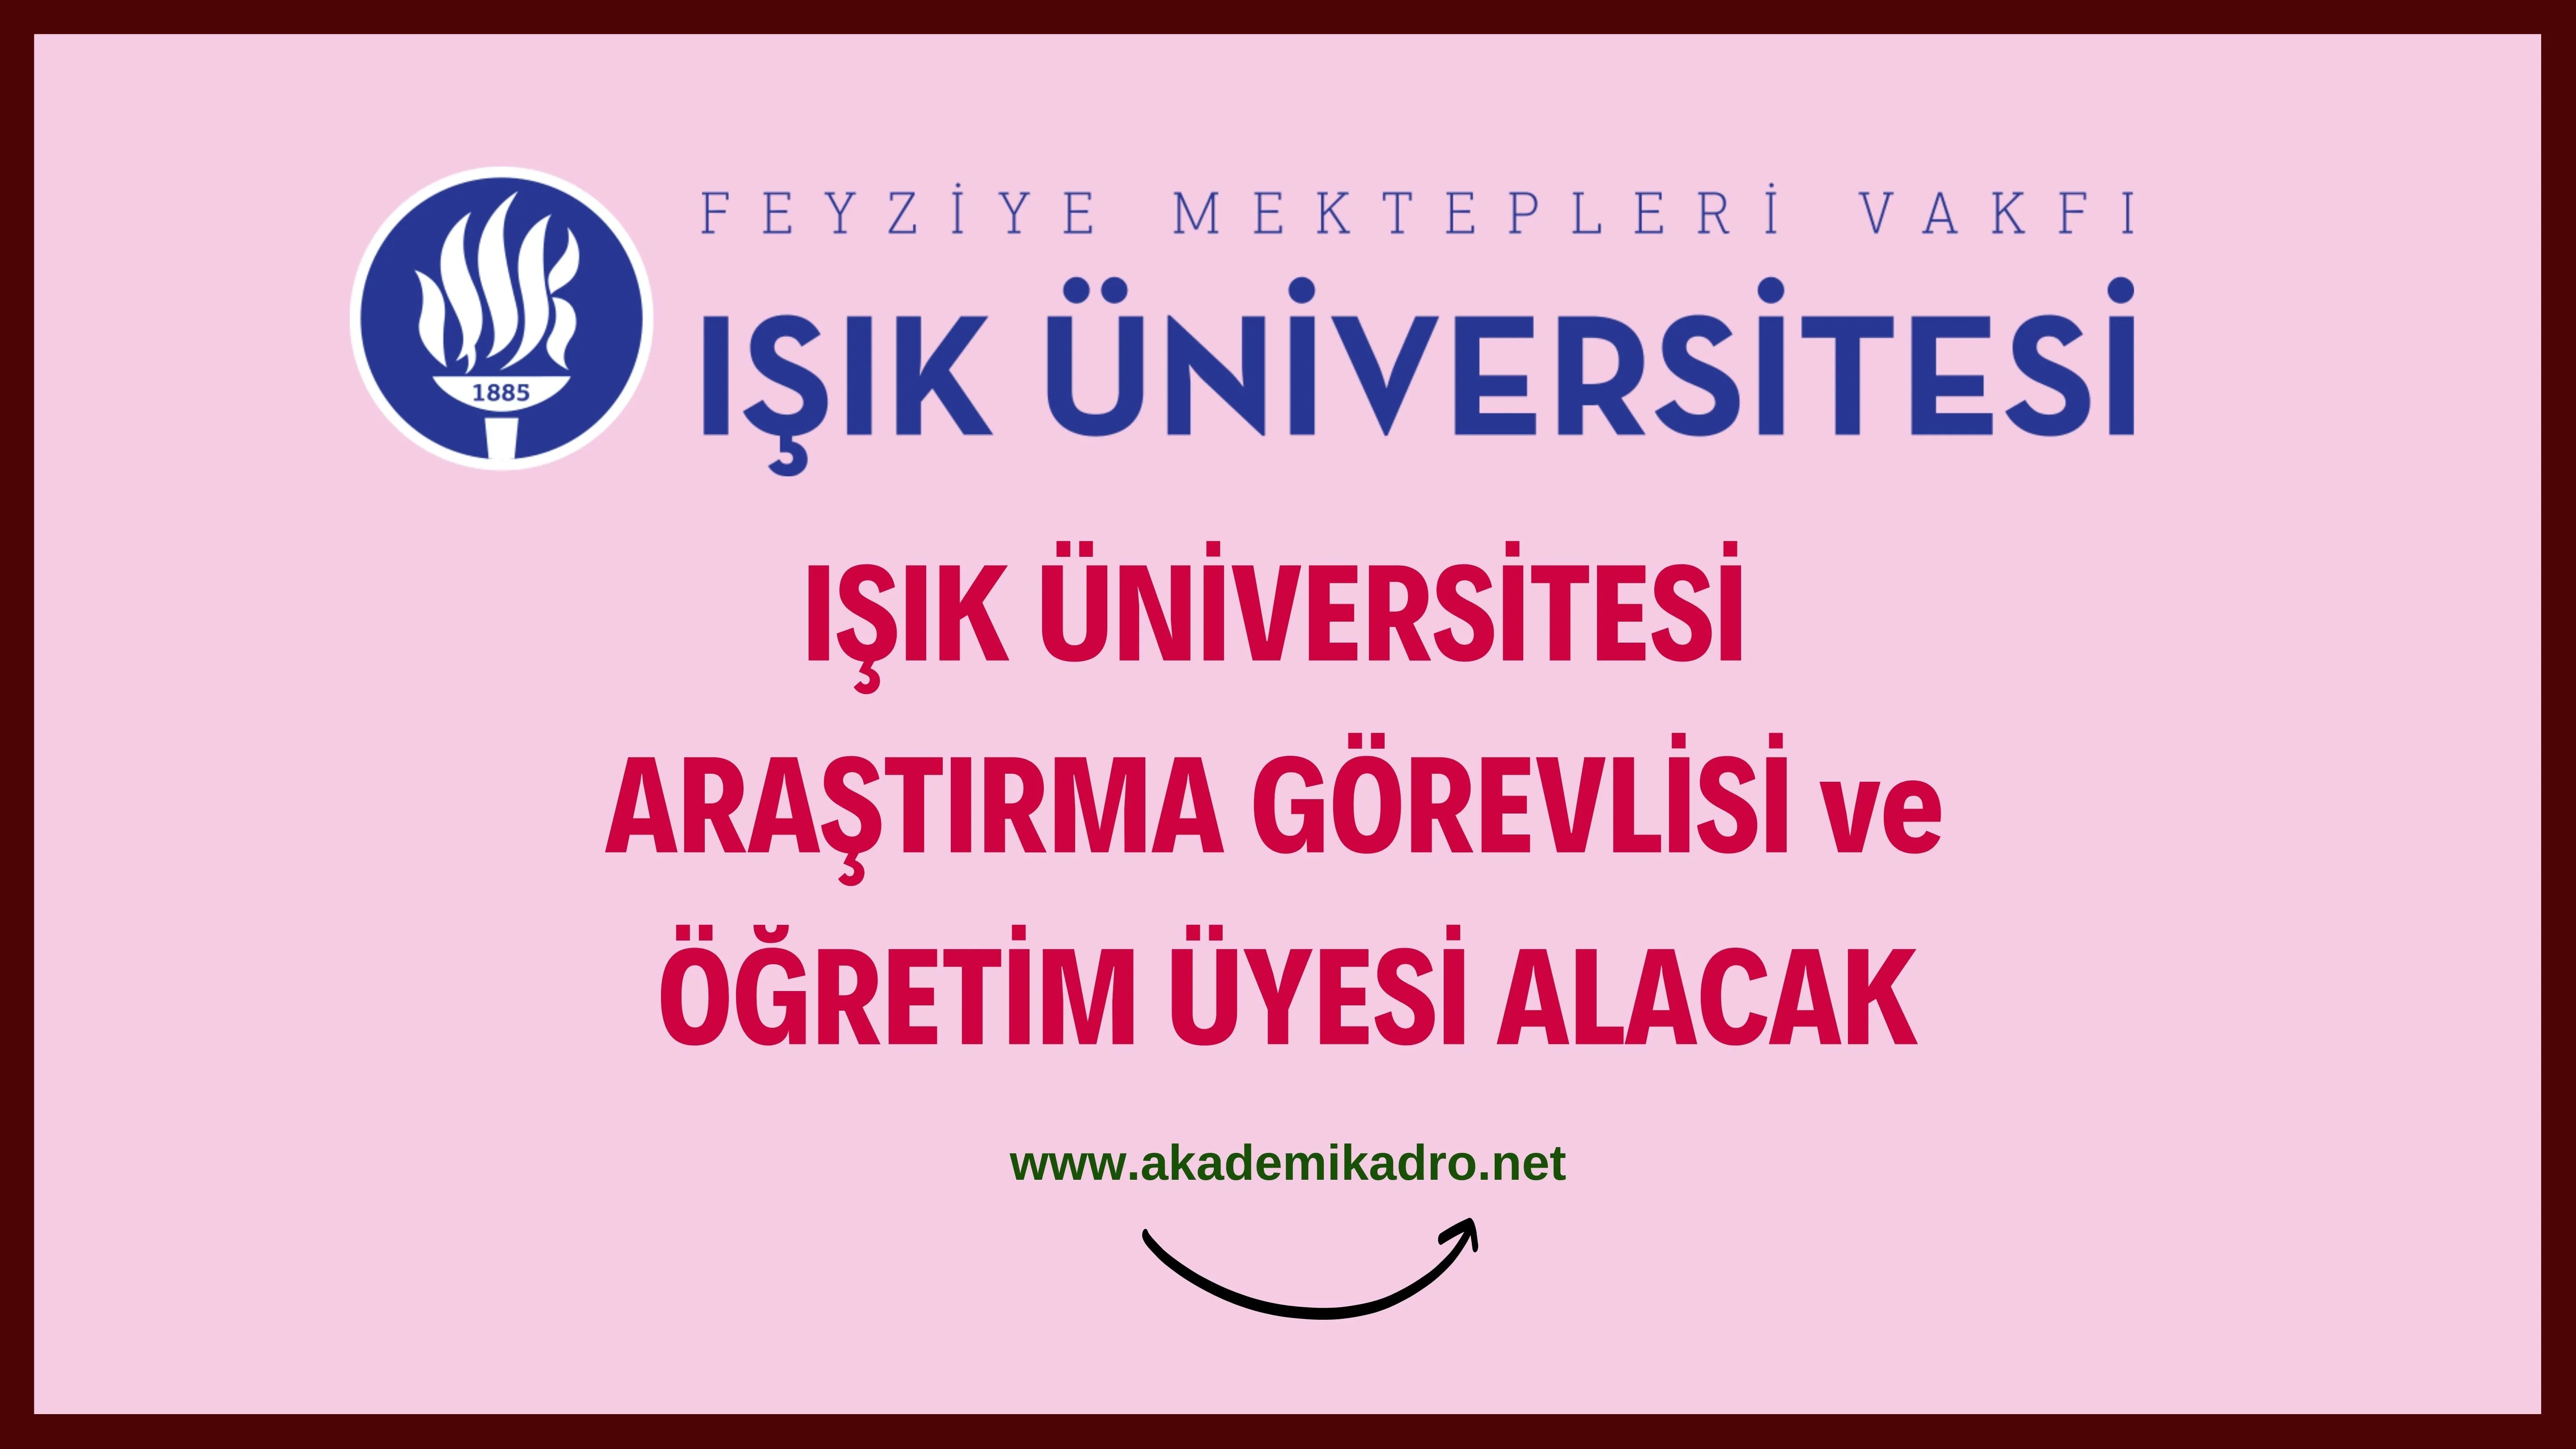 Işık Üniversitesi 2 Araştırma görevlisi ve çeşitli branşlarda 10 Öğretim üyesi alacak.